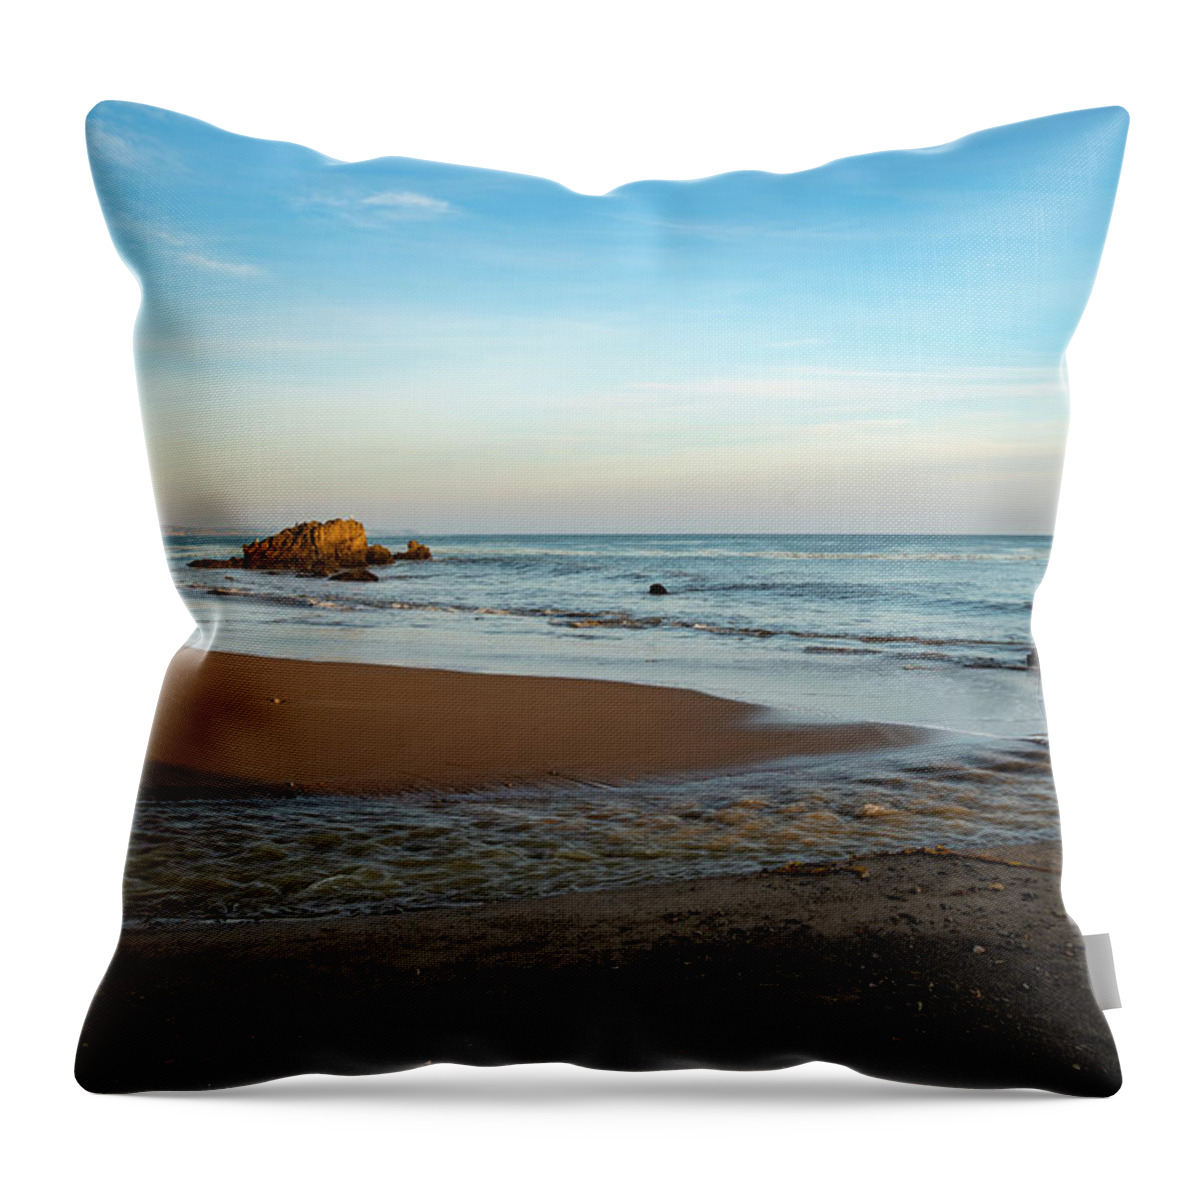 Beach Throw Pillow featuring the photograph Stream Running Across the Beach by Matthew DeGrushe